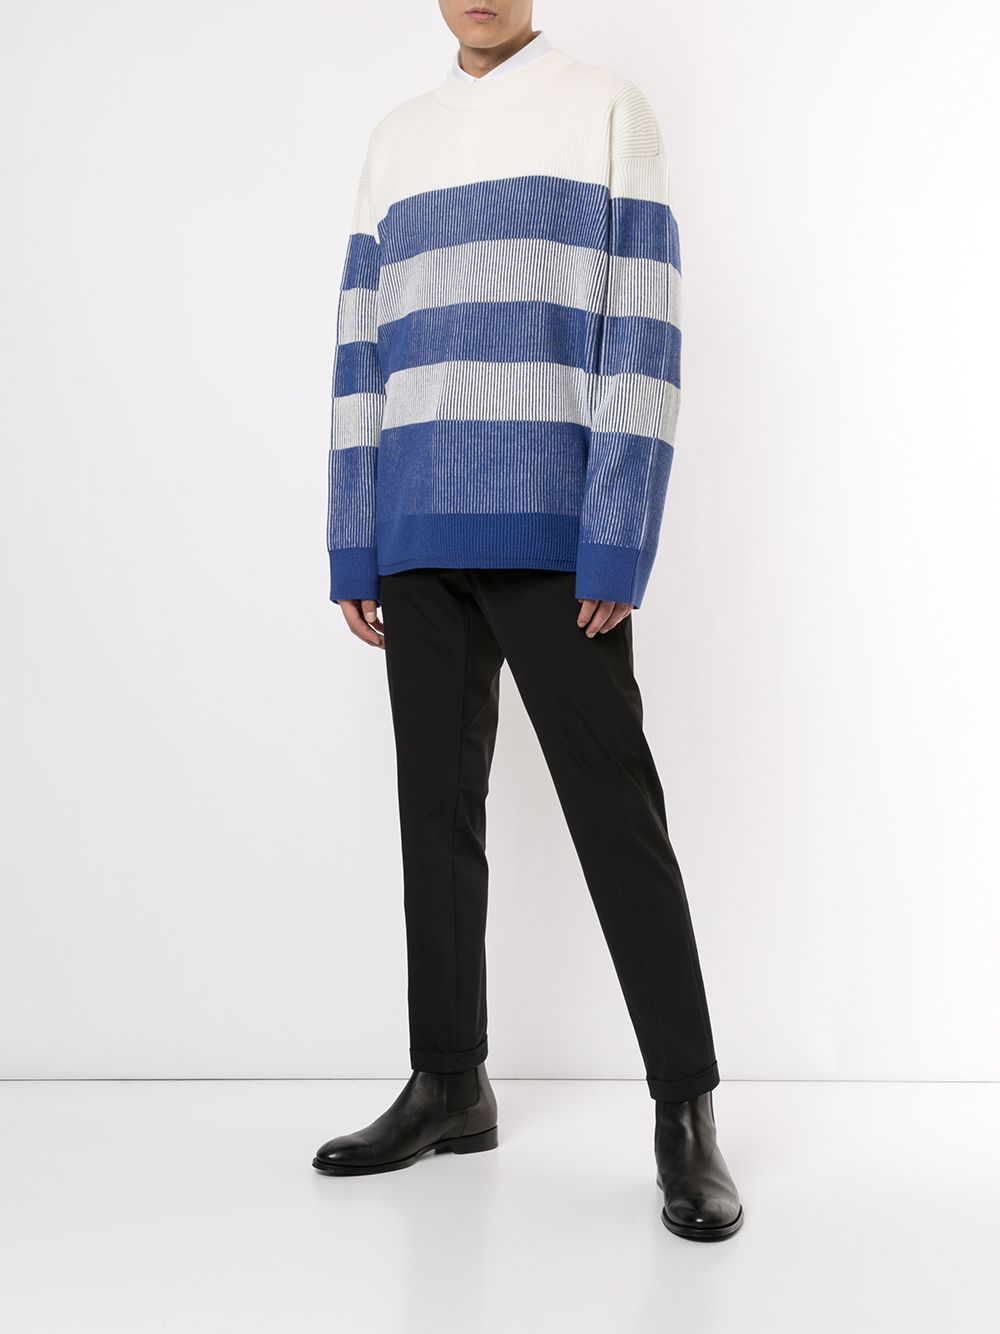 фото Ck calvin klein свитер в полоску с длинными рукавами